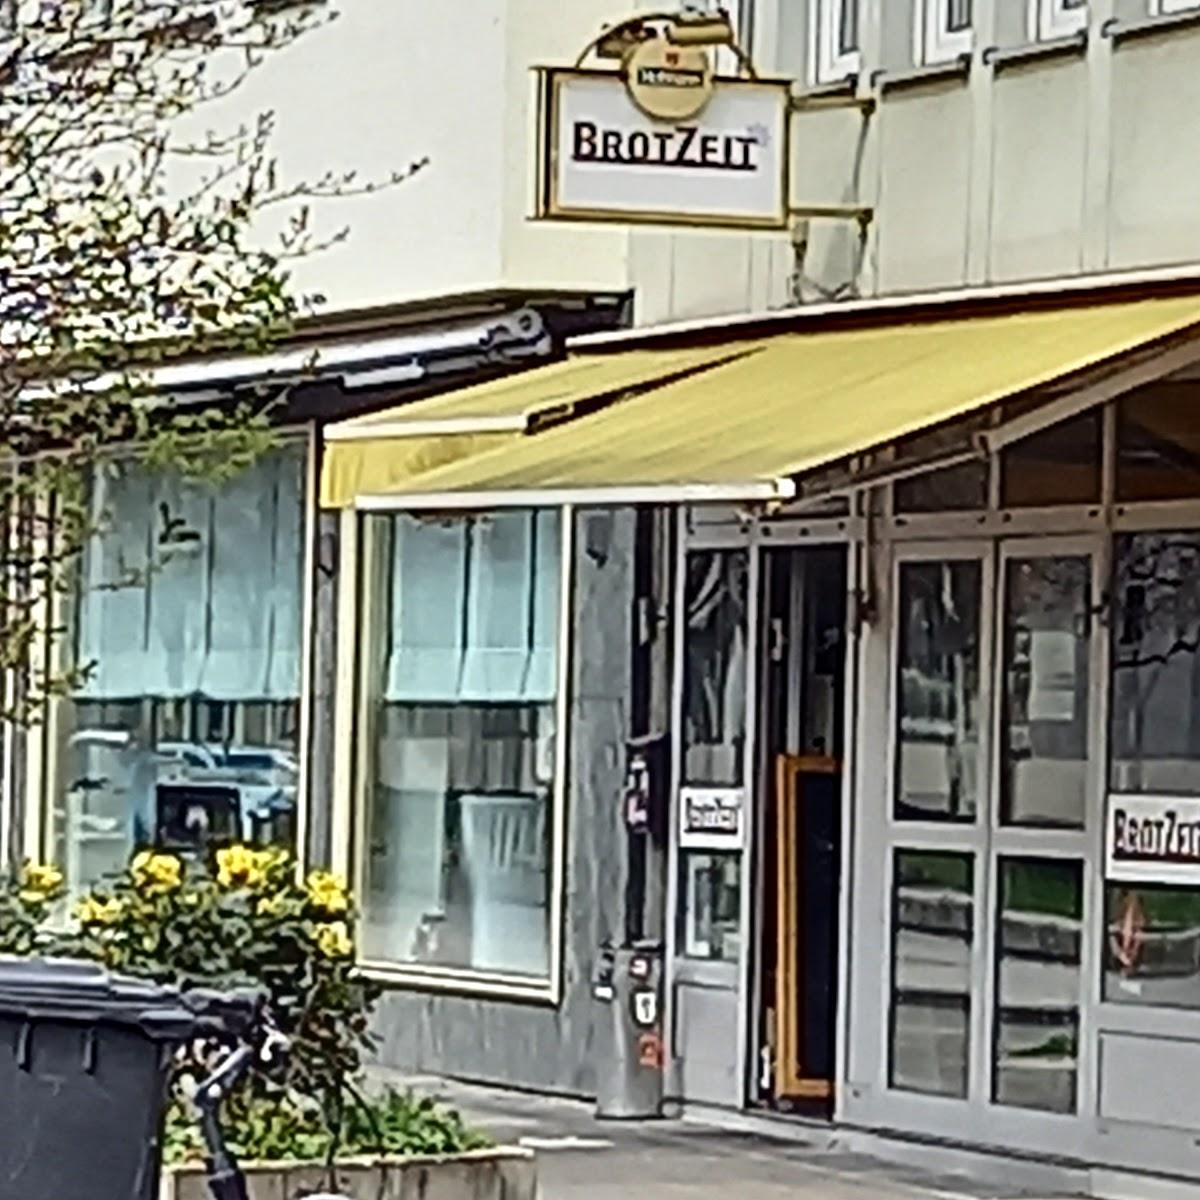 Restaurant "BrotZeit" in Nürnberg